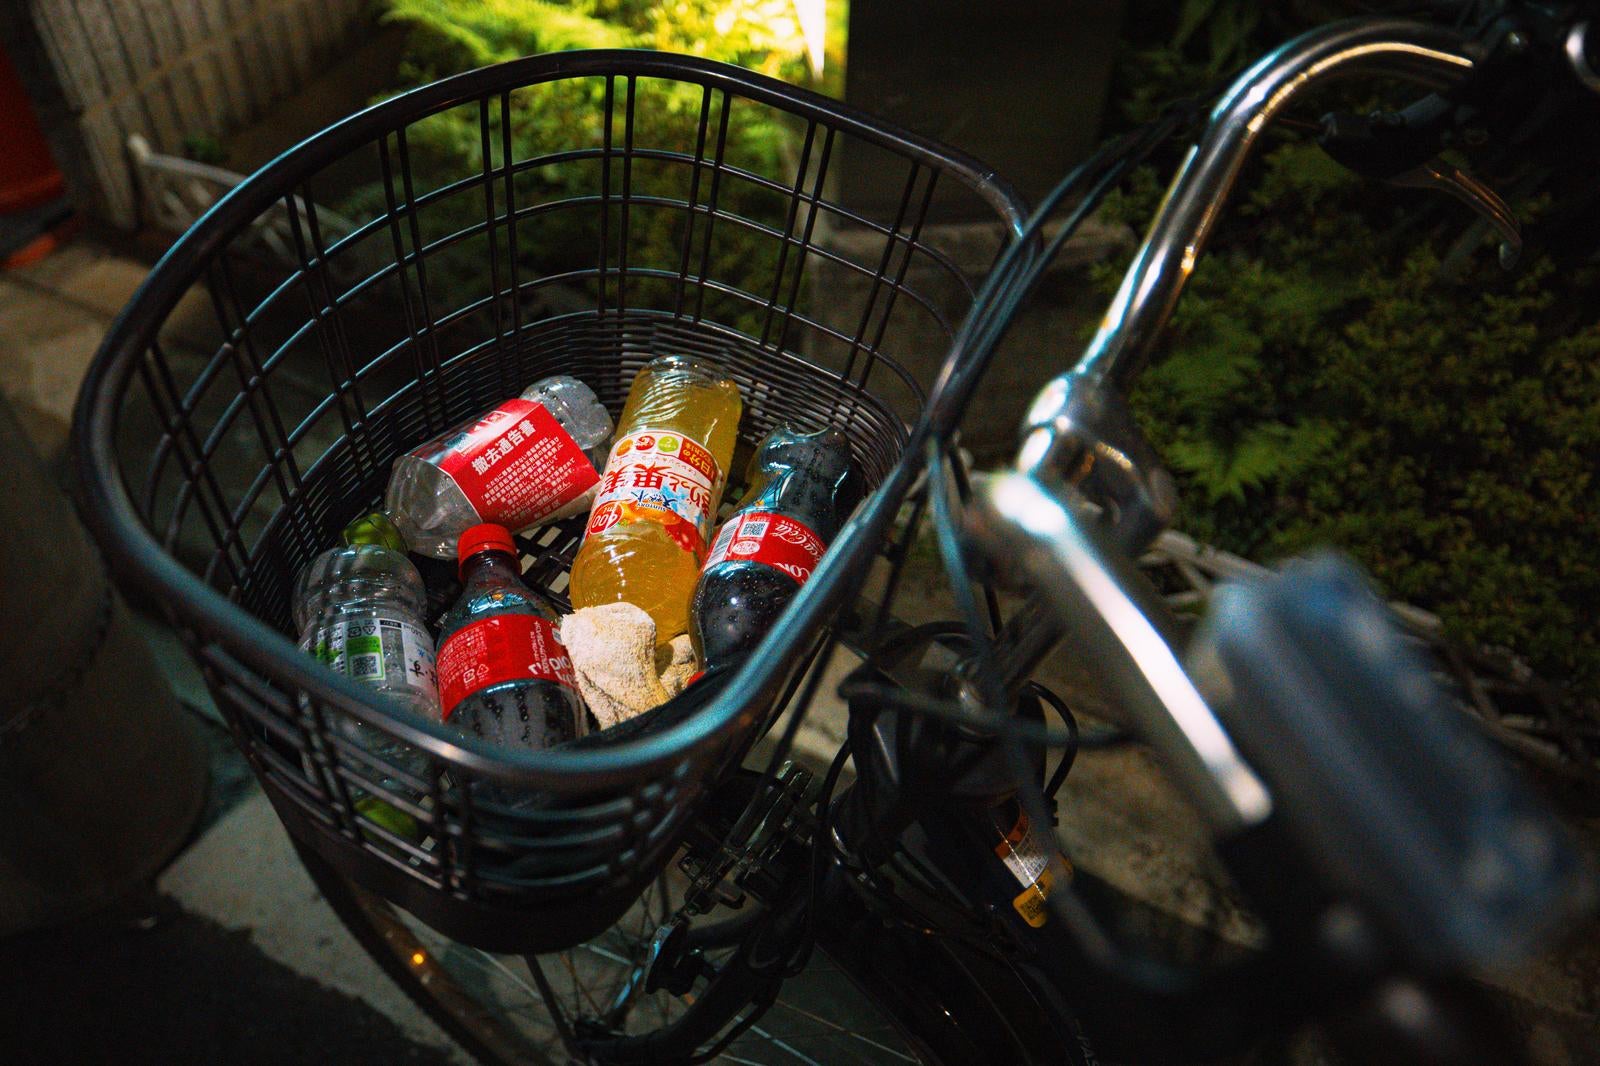 「駐輪している自転車のかごにペットボトルのポイ捨て」の写真